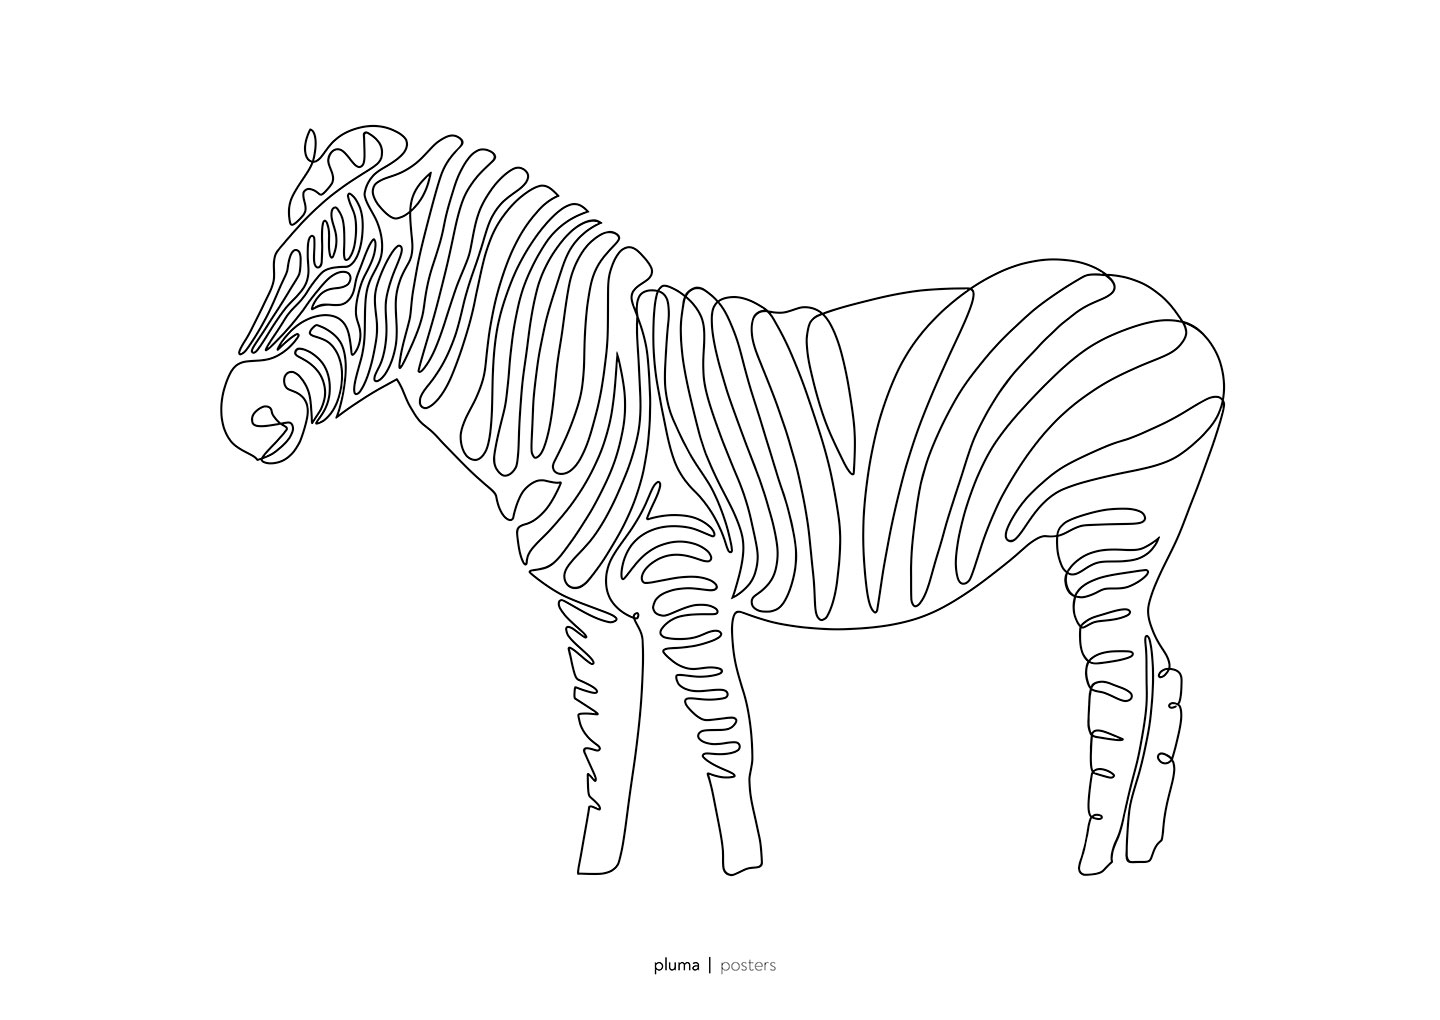 Se Zebra af Pluma Posters hos Illux.dk